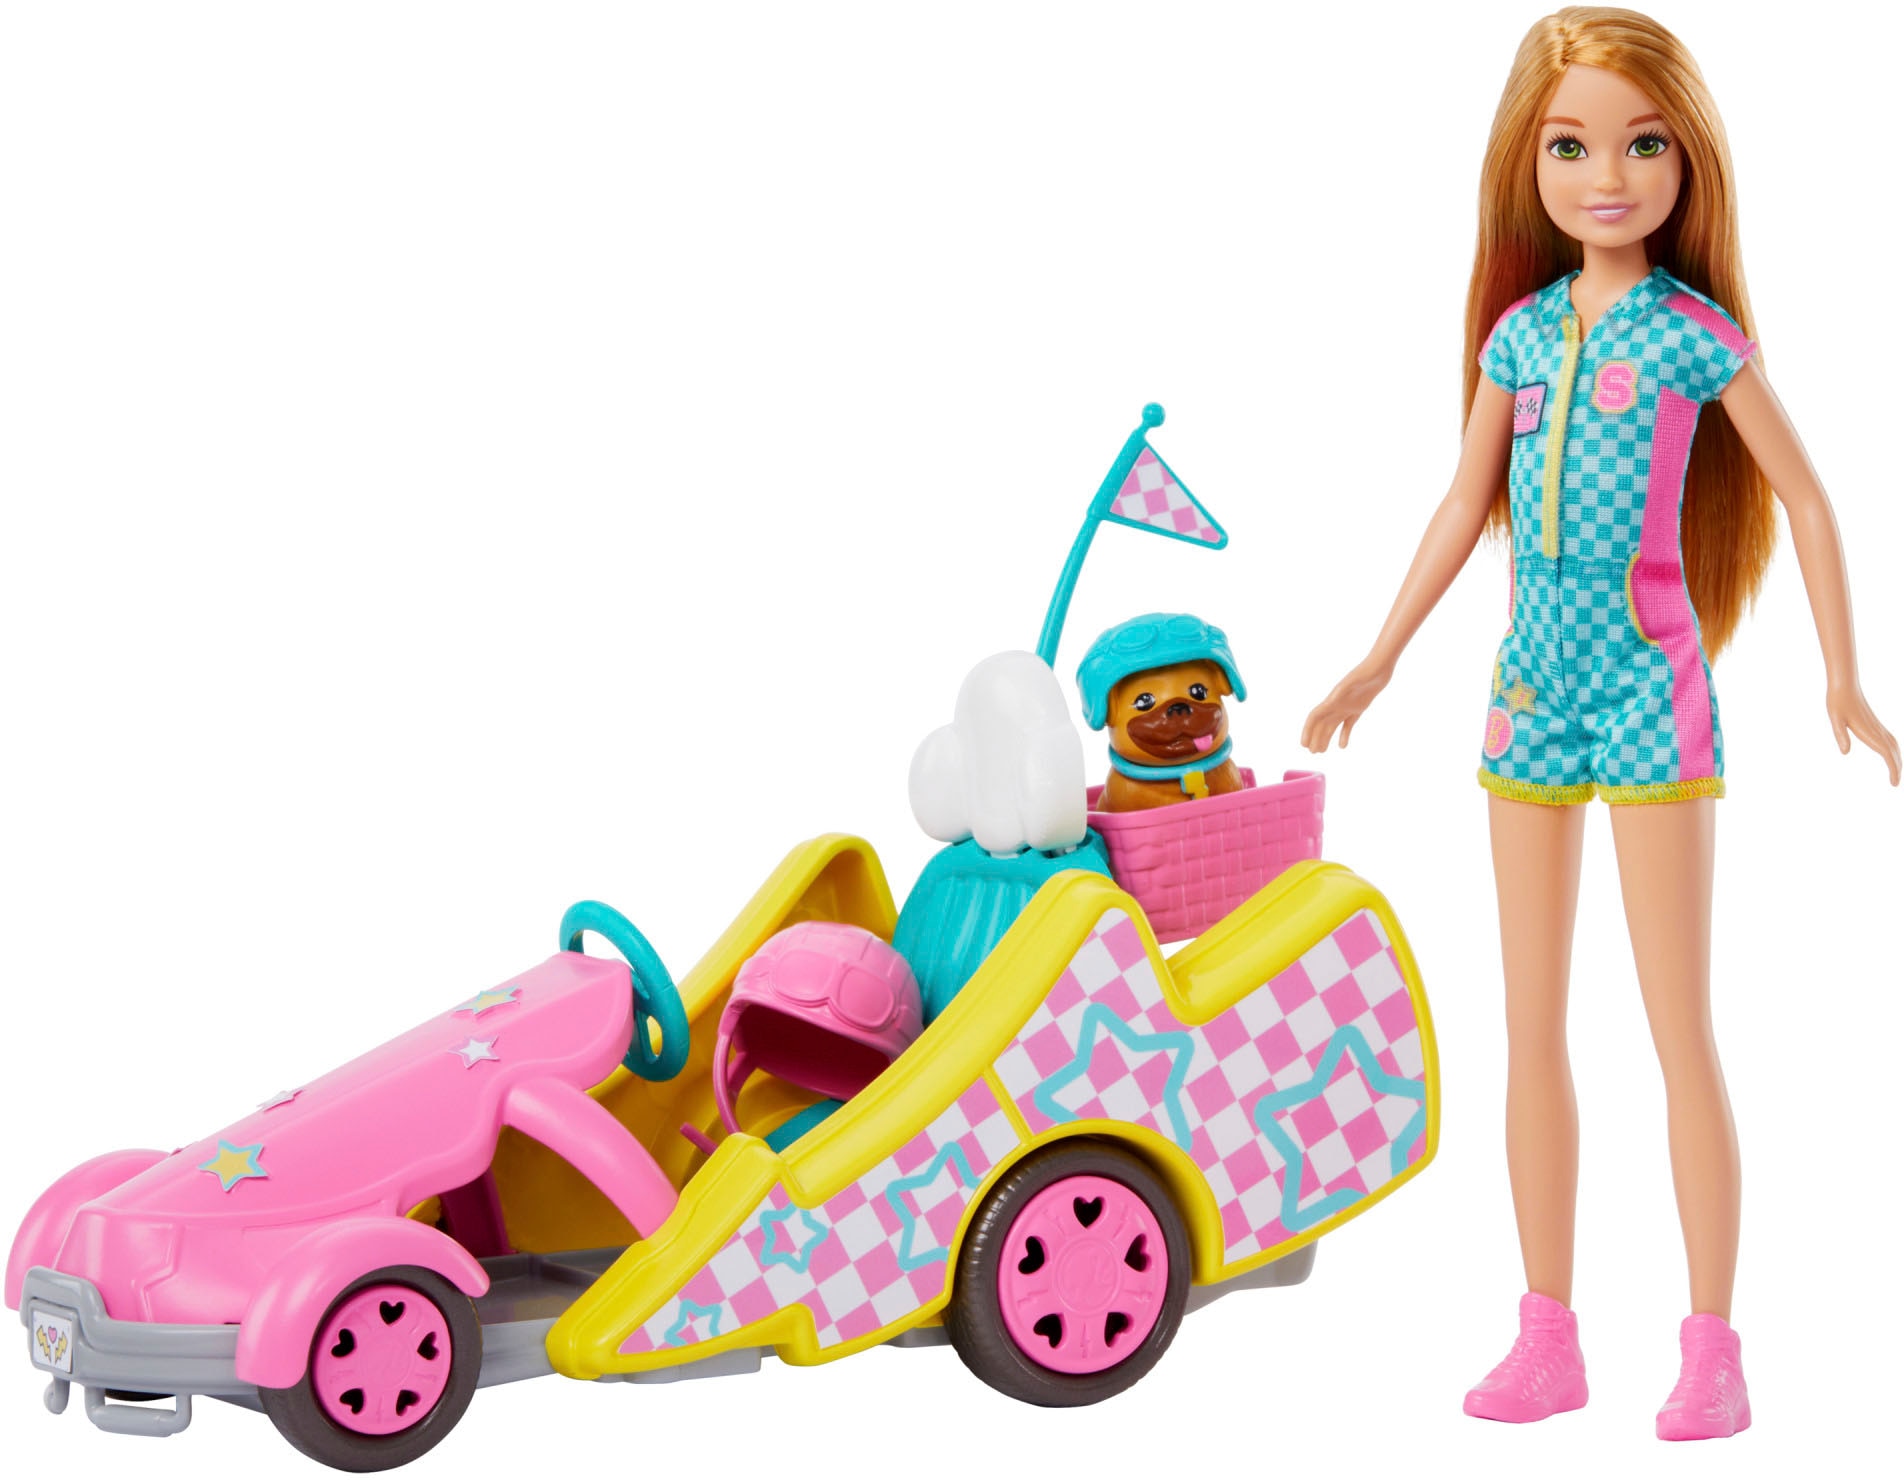 Puppen Fahrzeug »Stacie Go-Kart«, inklusive Puppe Stacie